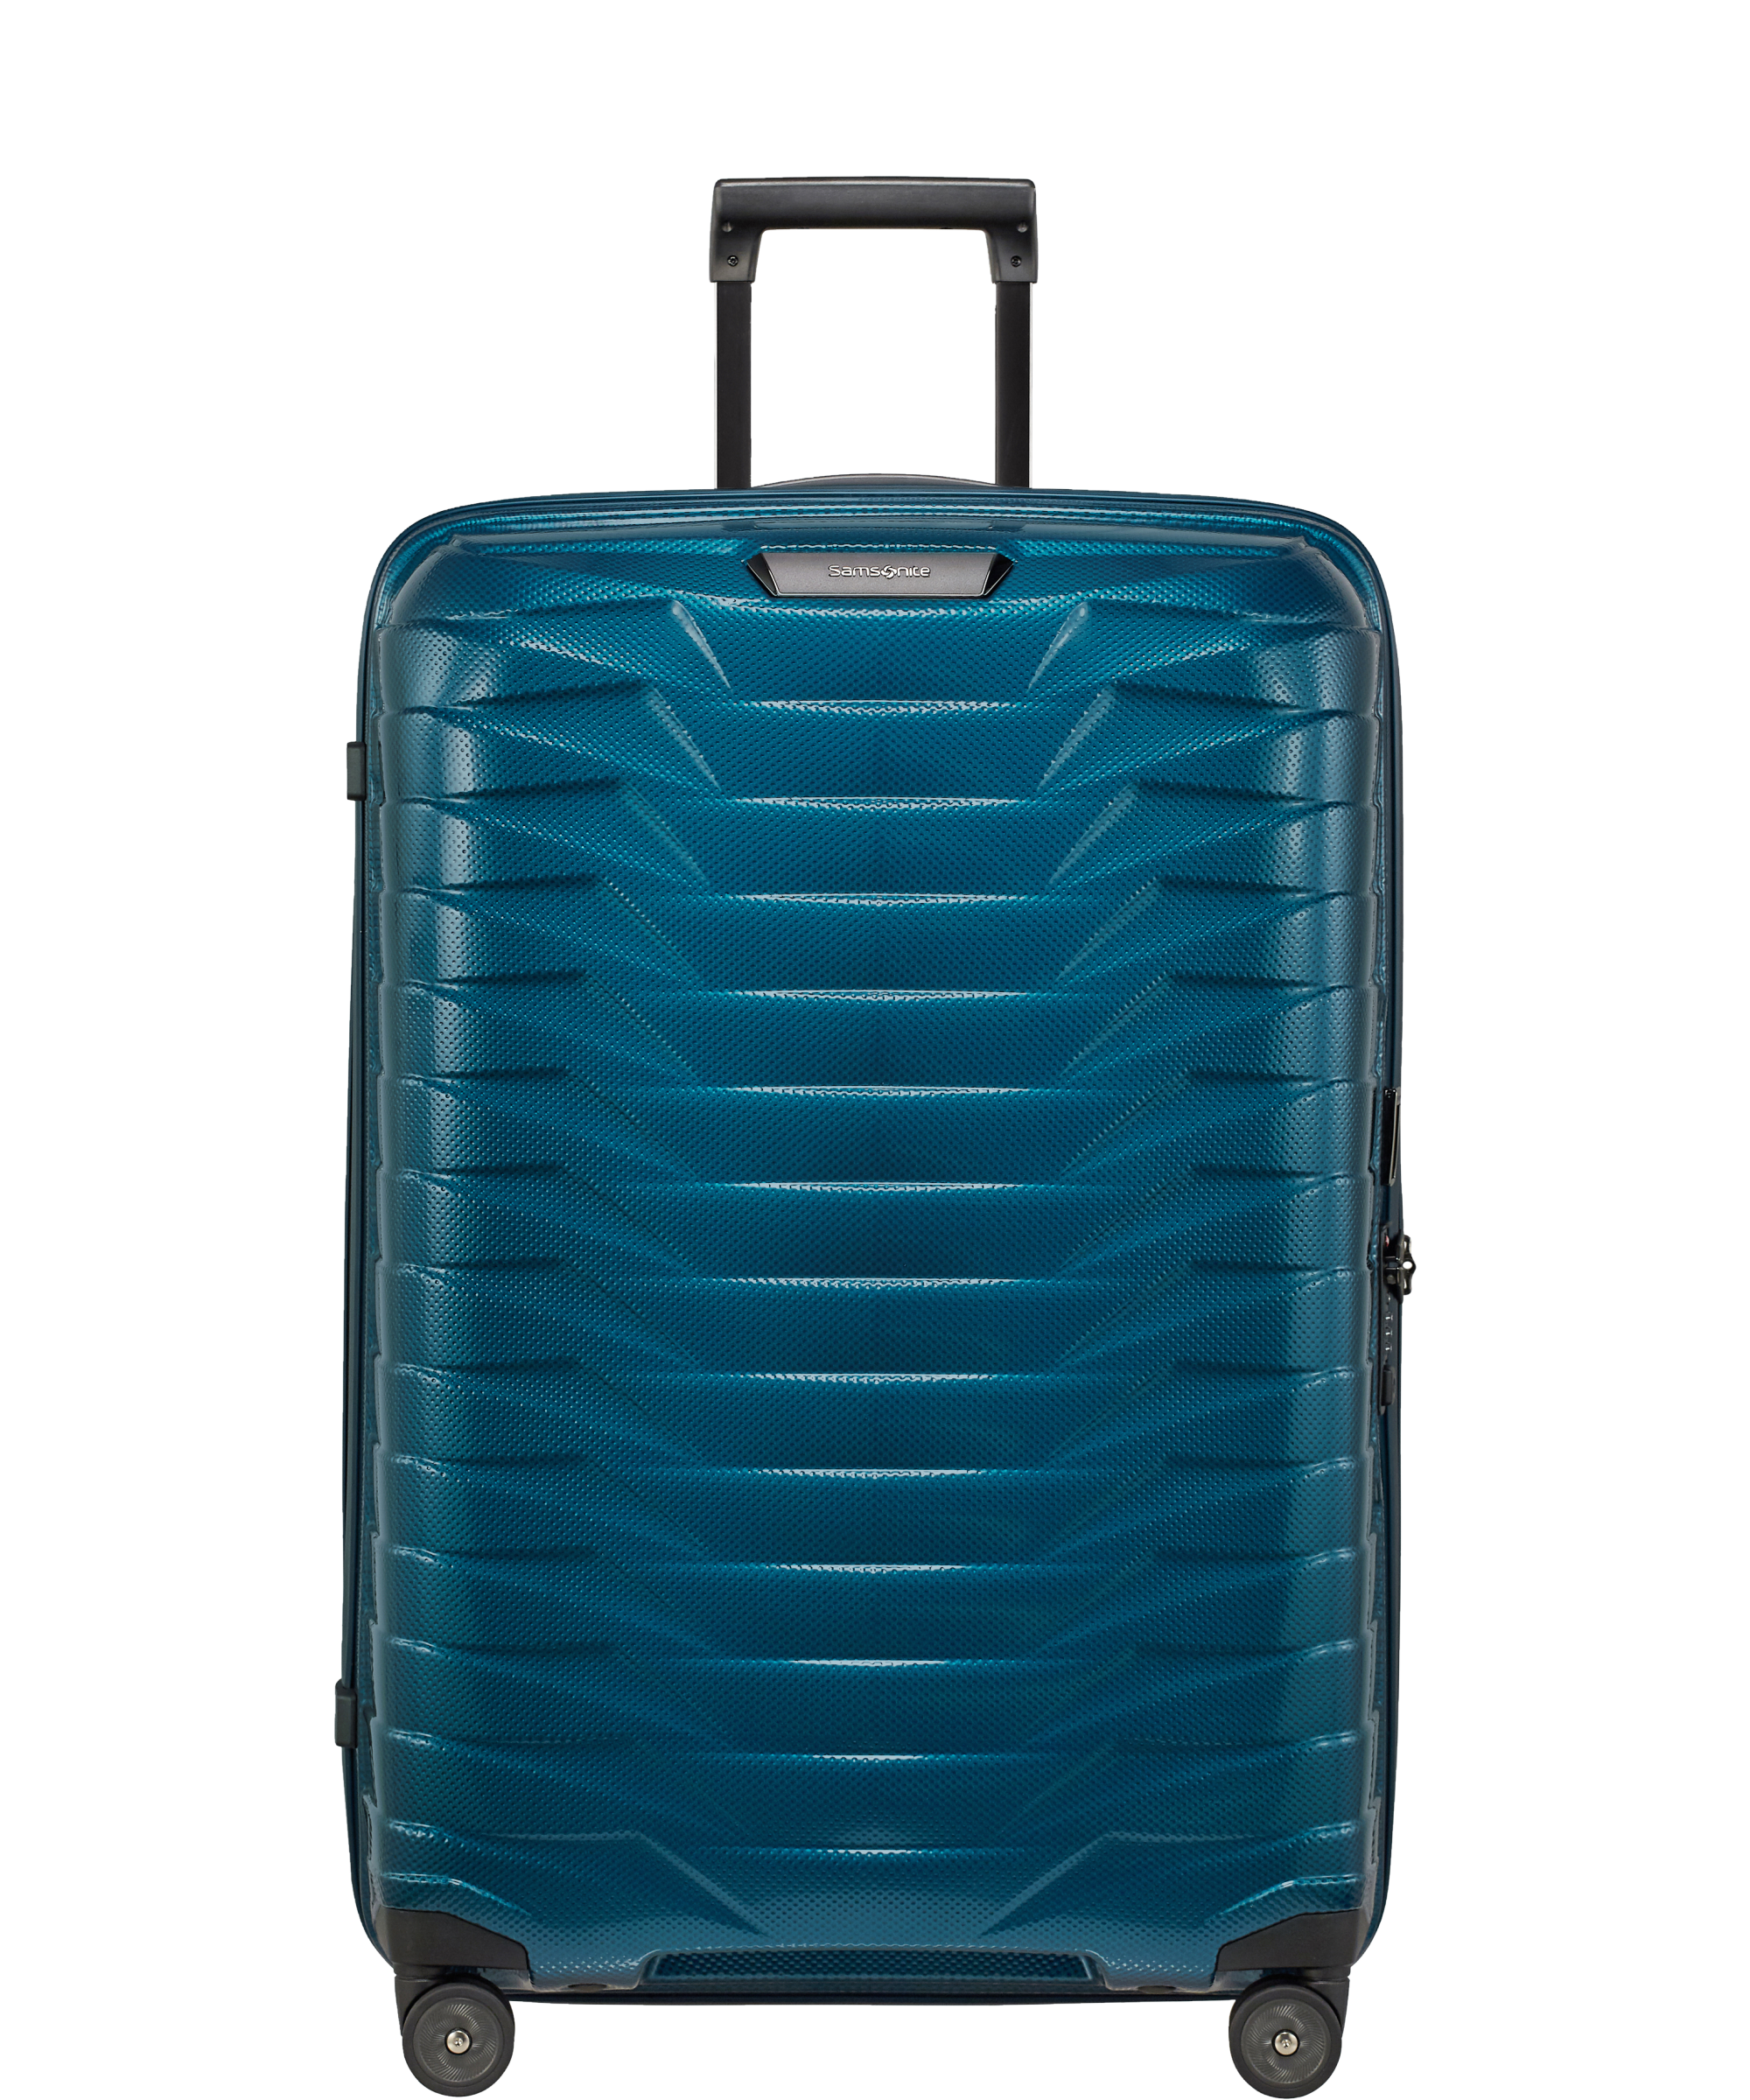 Mujer Bolsos de Equipaje y maletas de Maleta con ruedas de Samsonite de color Azul 